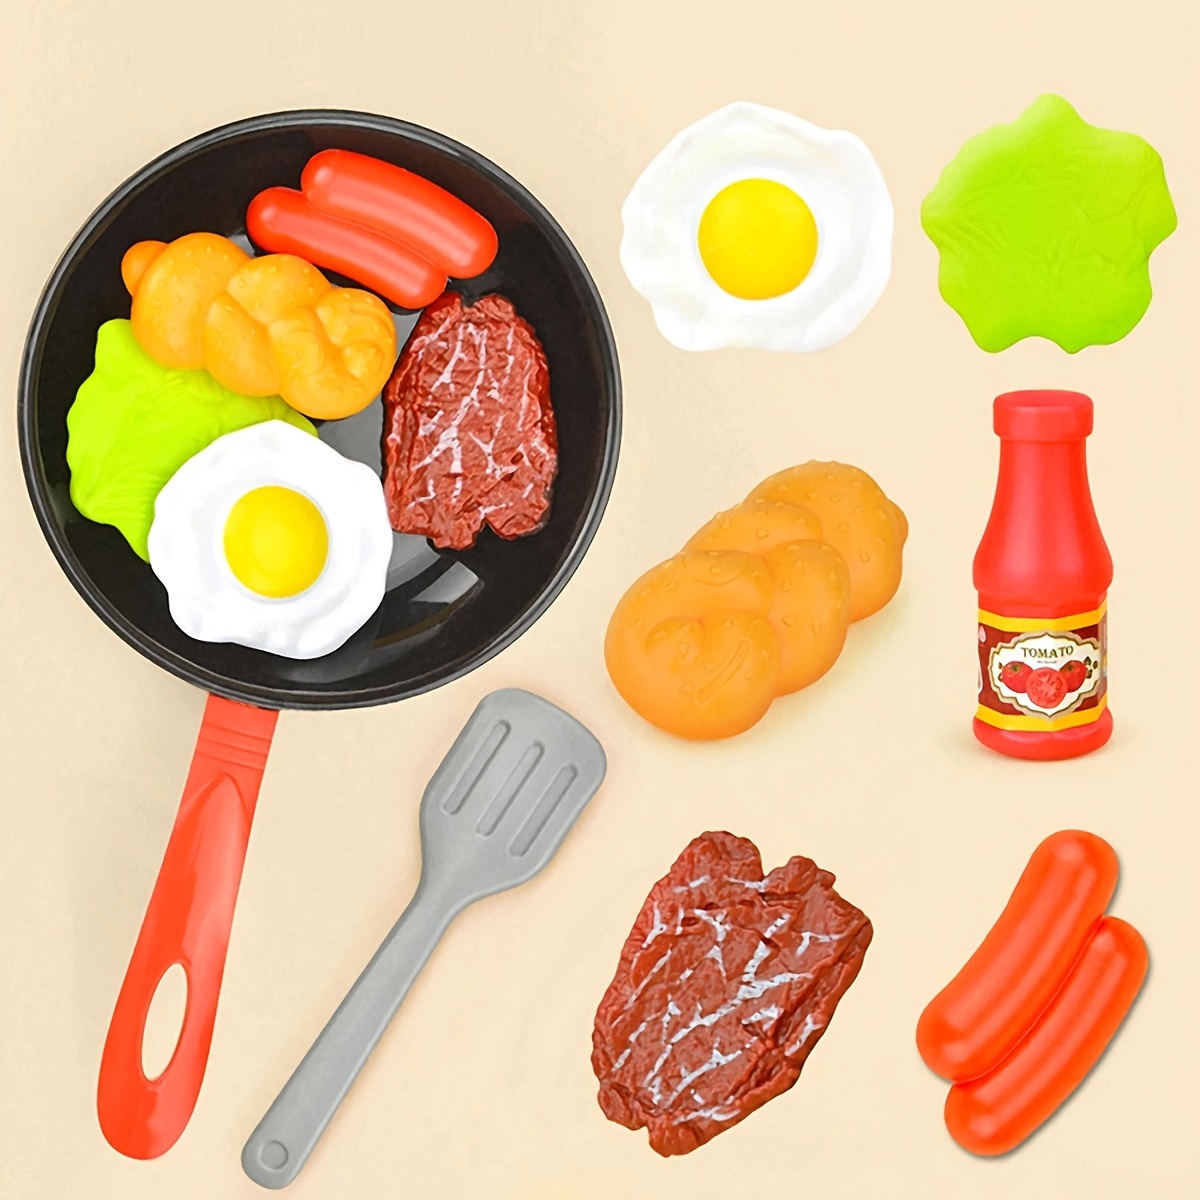  Theefun Accesorios de cocina de juego: juegos de comida para  niños, juego de cocina de simulación con olla de presión de plástico,  sartén, utensilios de cocina, regalos educativos de aprendizaje para 